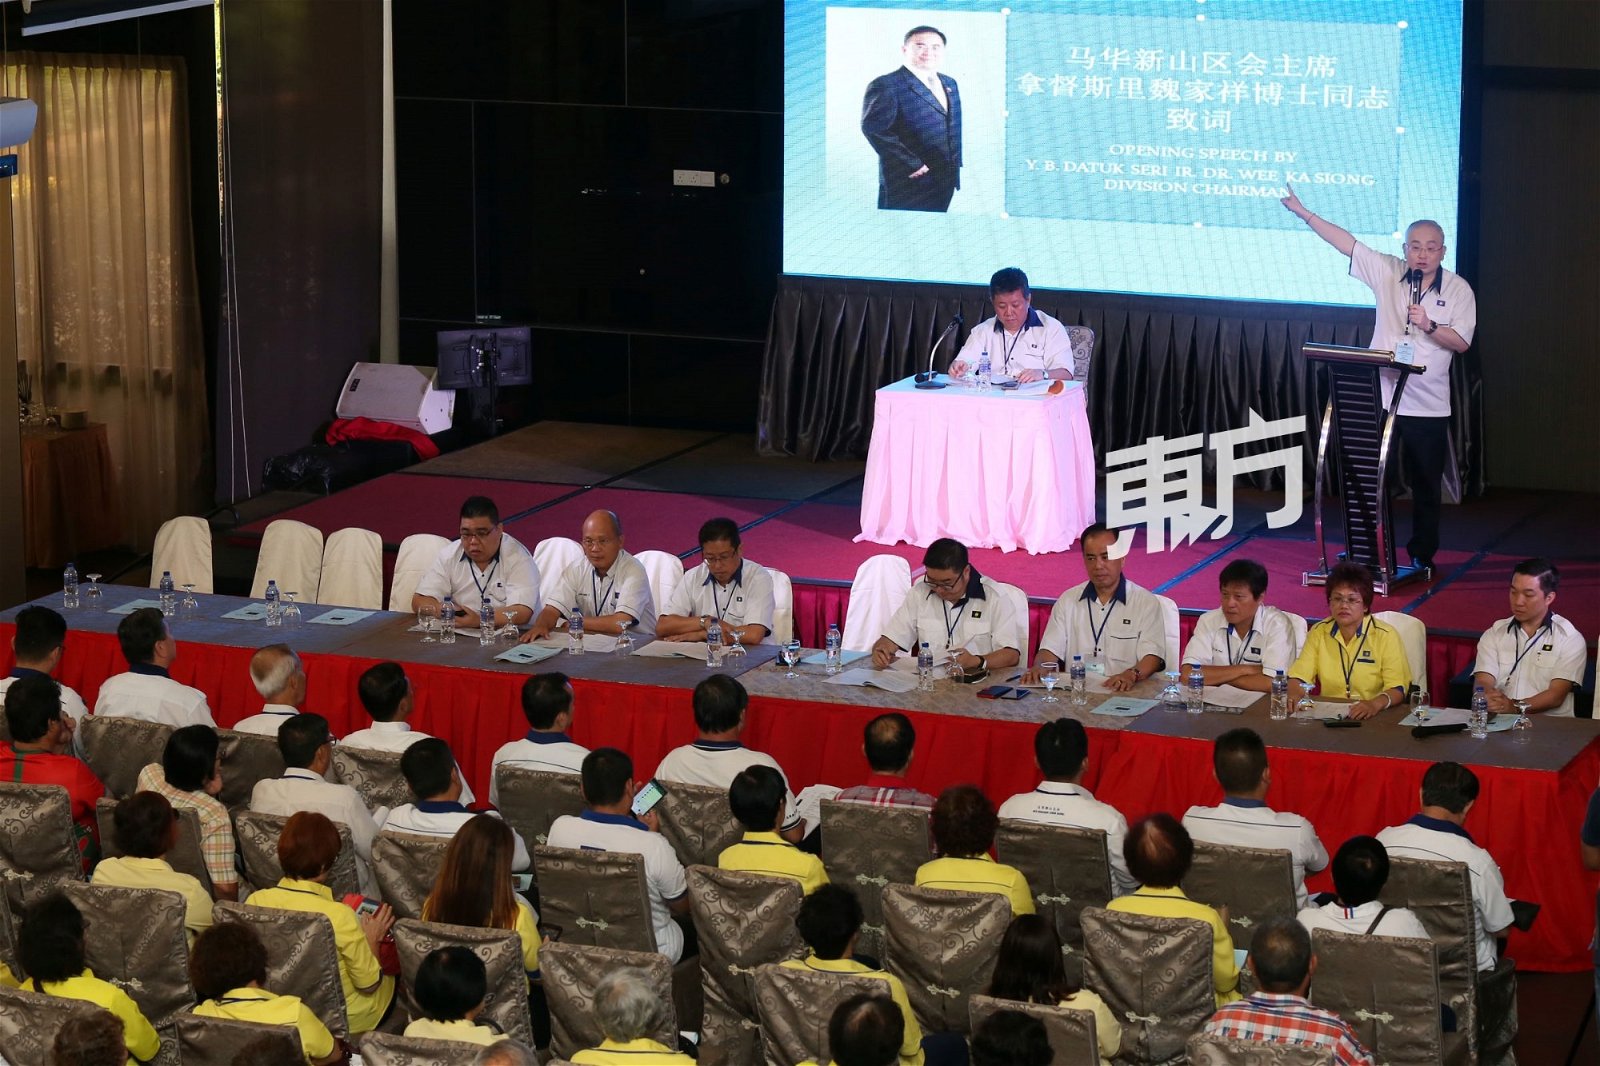 魏家祥（右）在大会上声称获许多区会支持竞选总会长。（摄影：刘维’杰）